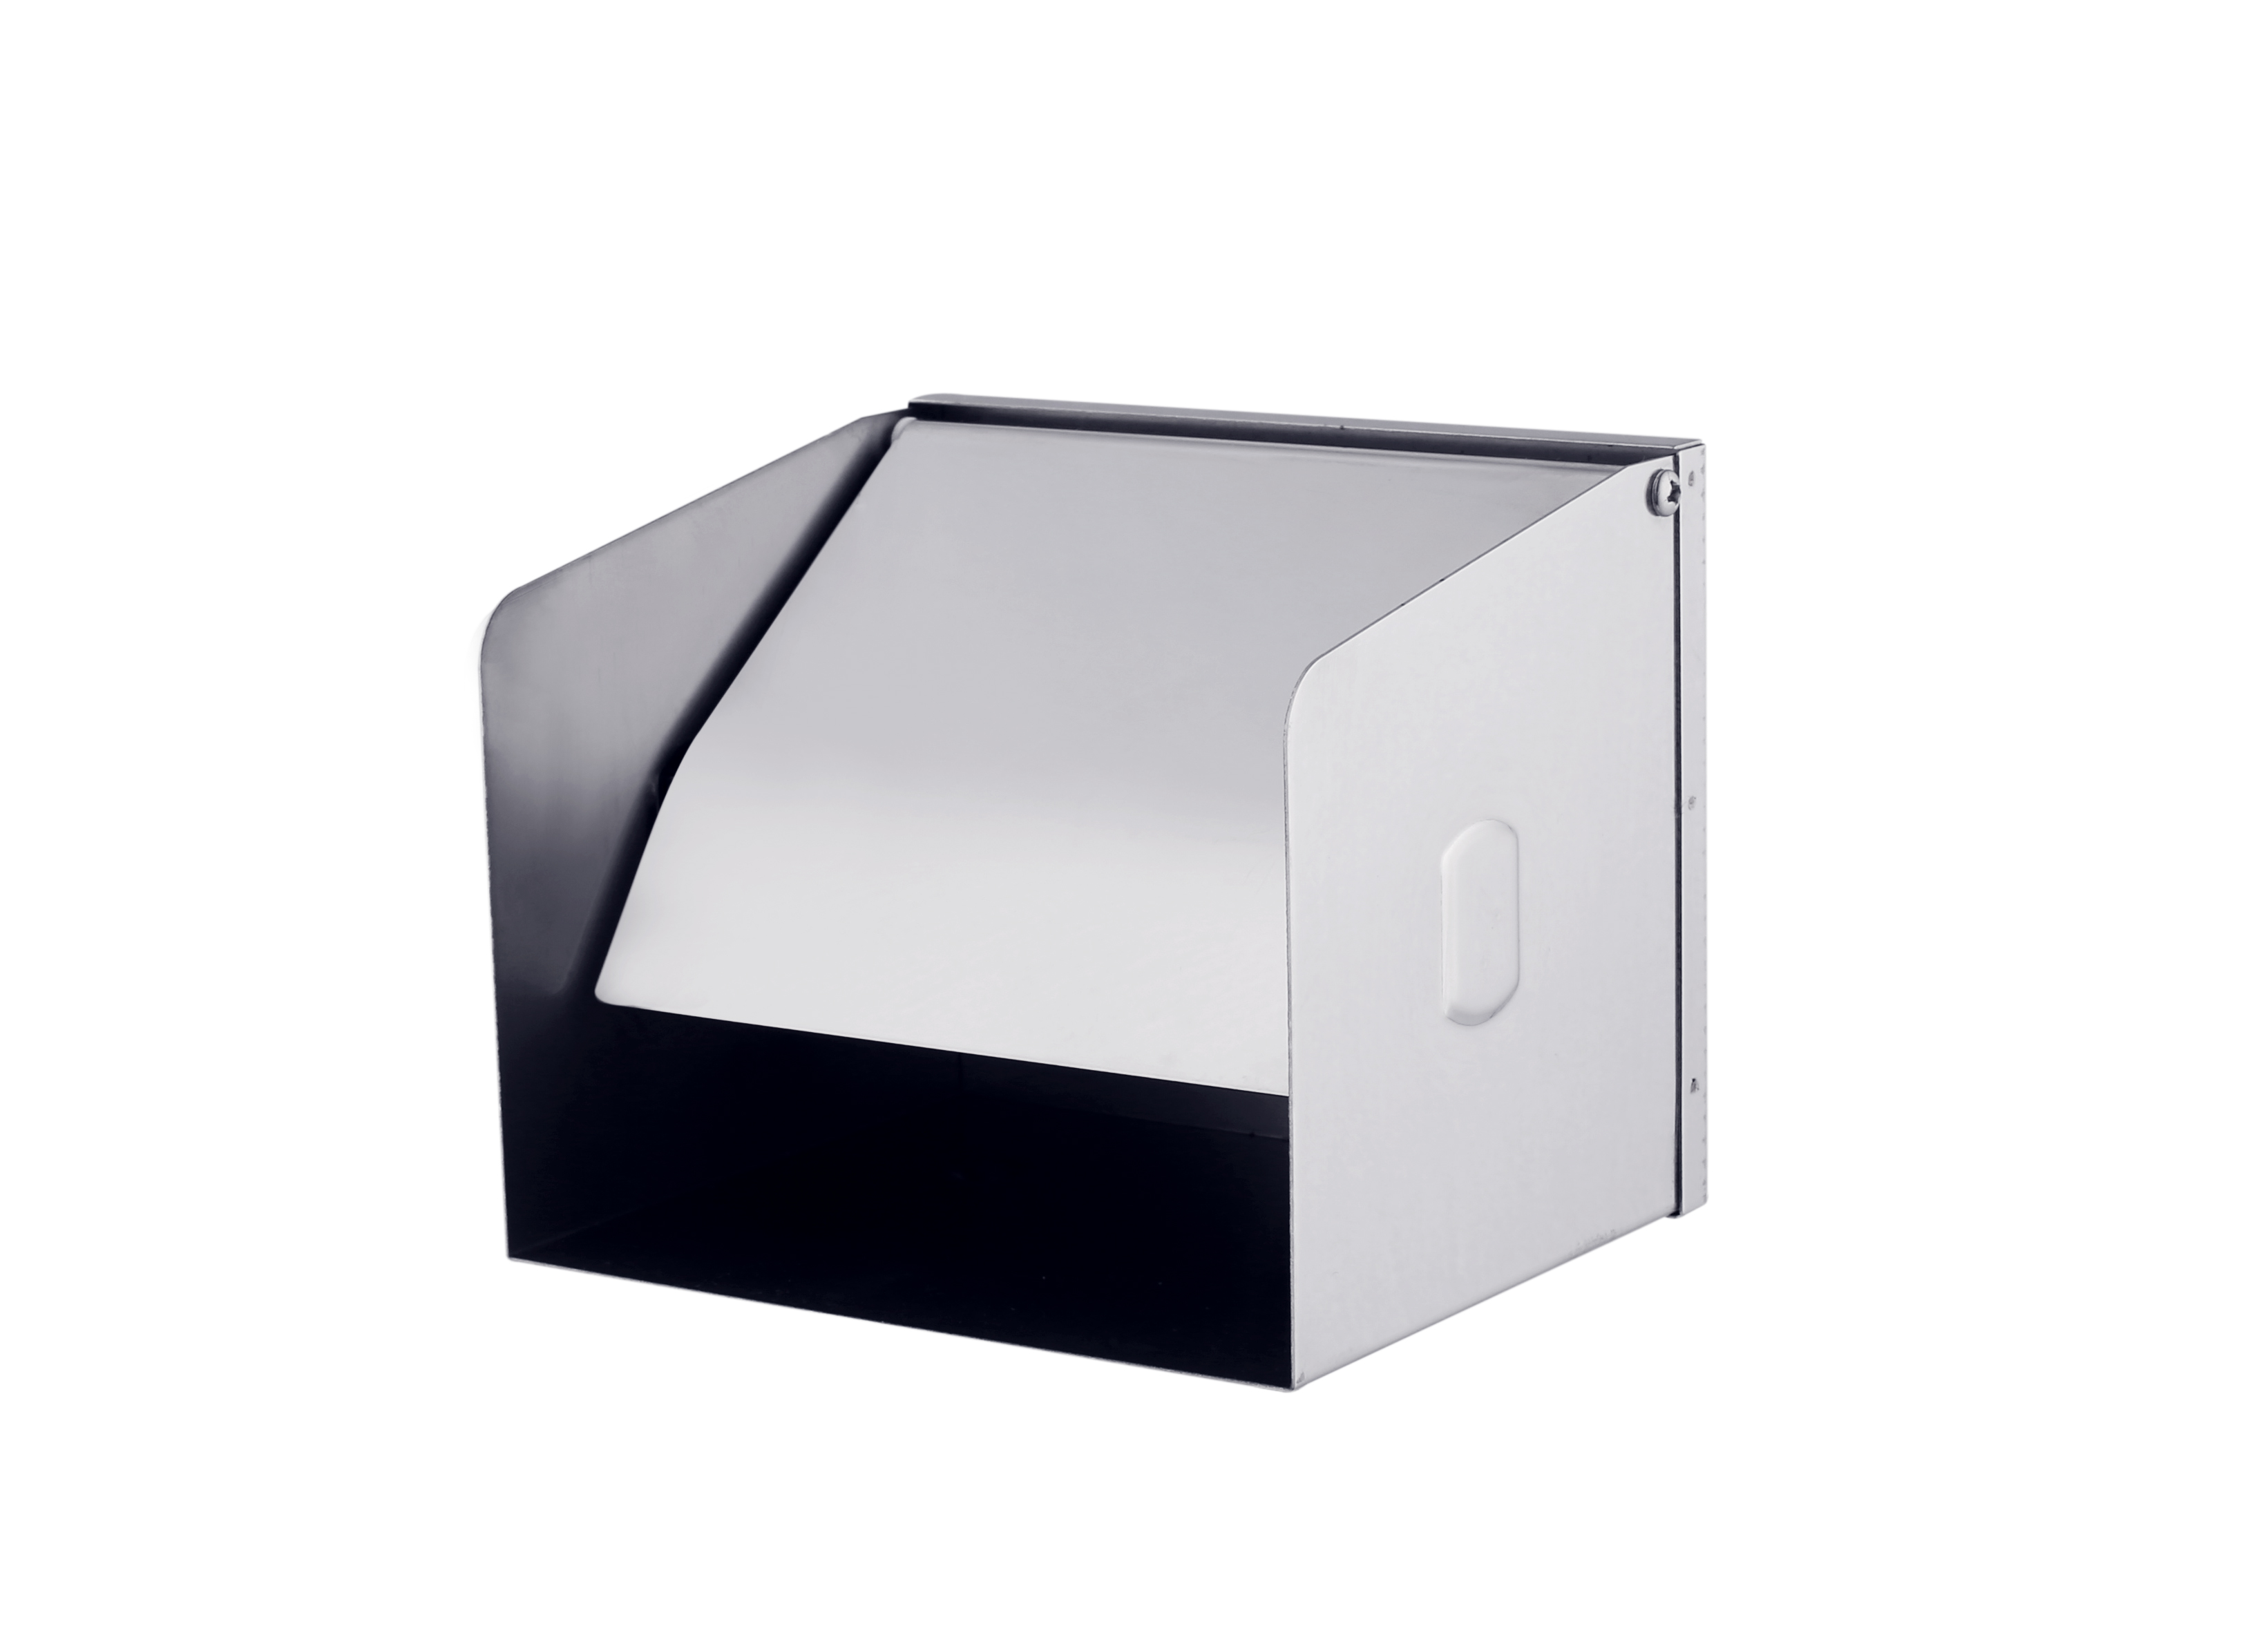 Stainless Steel Toilet Paper Roll Dispenser